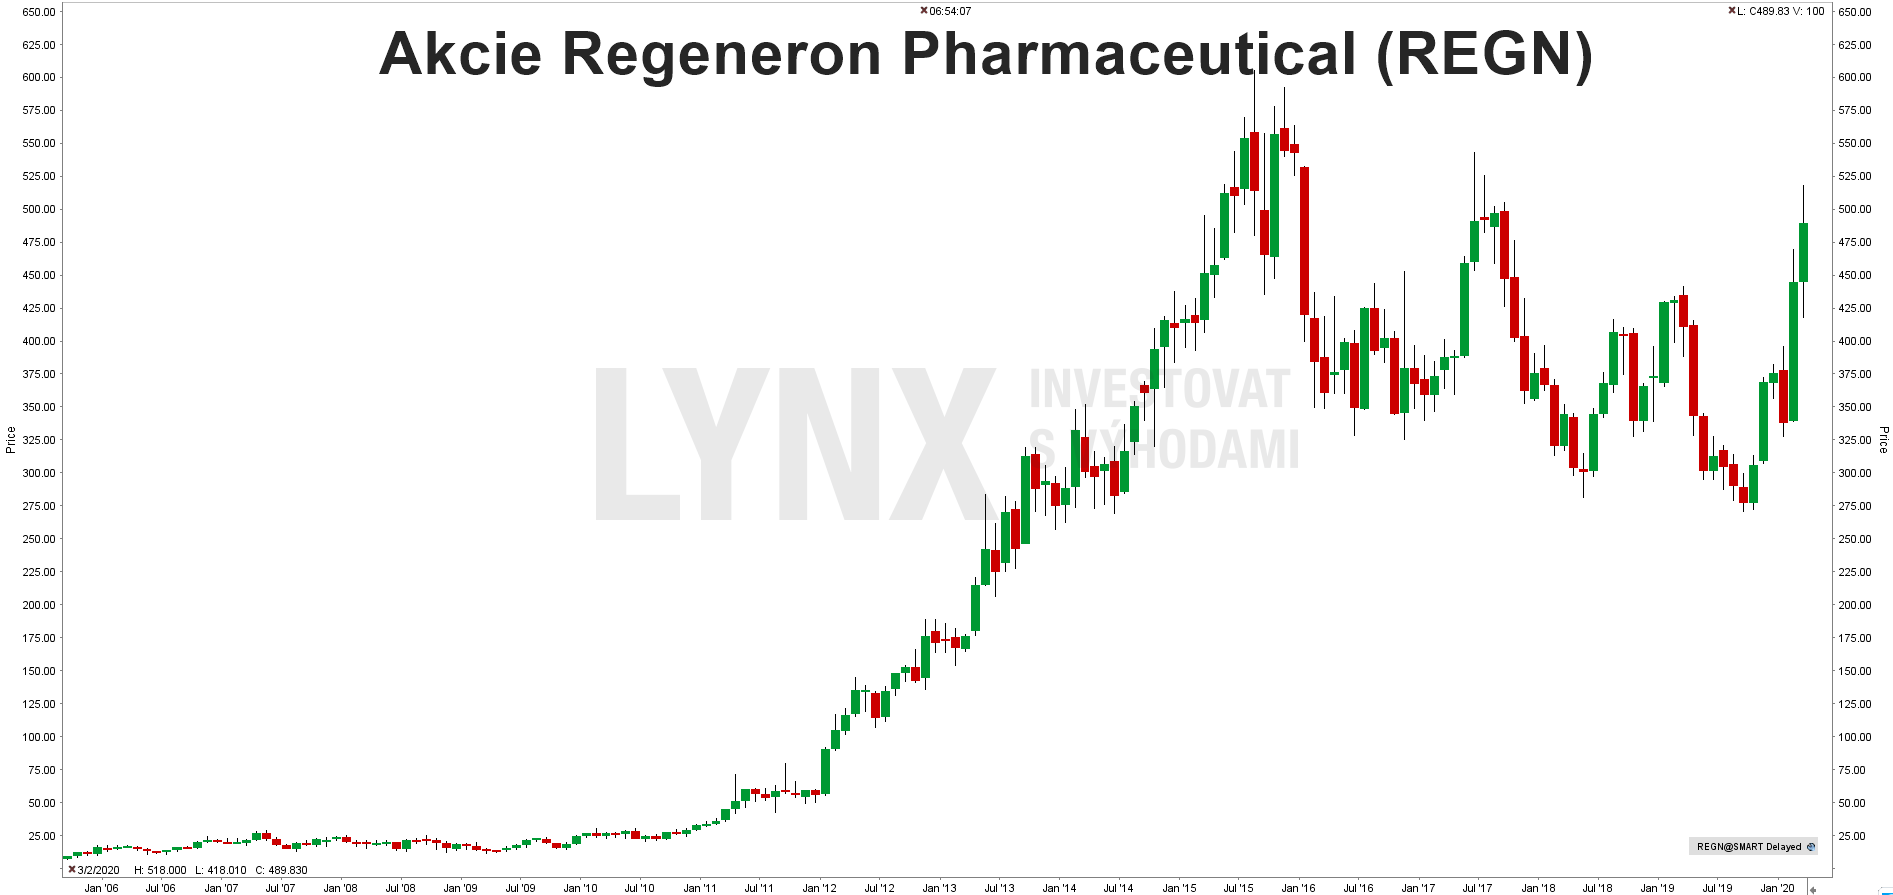 Graf akcie Regeneron Pharmaceutical